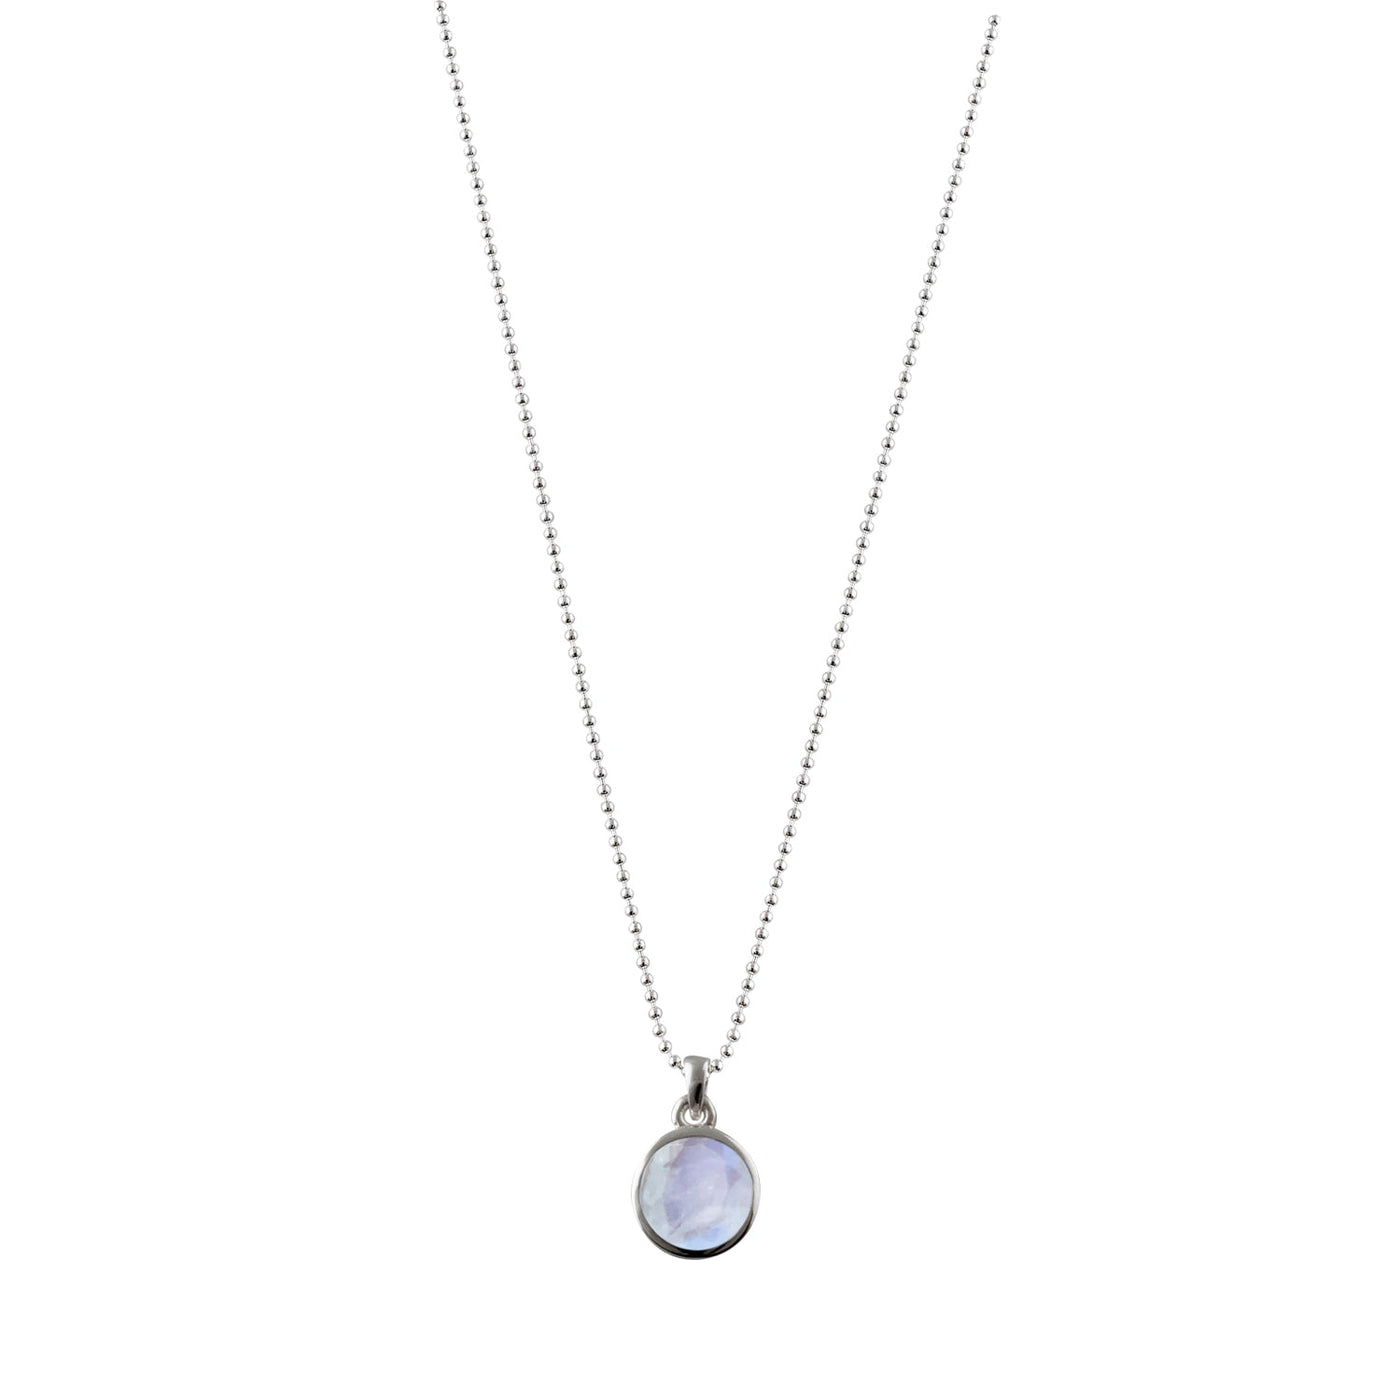 Von Treskow Fine ball necklace with round moonstone